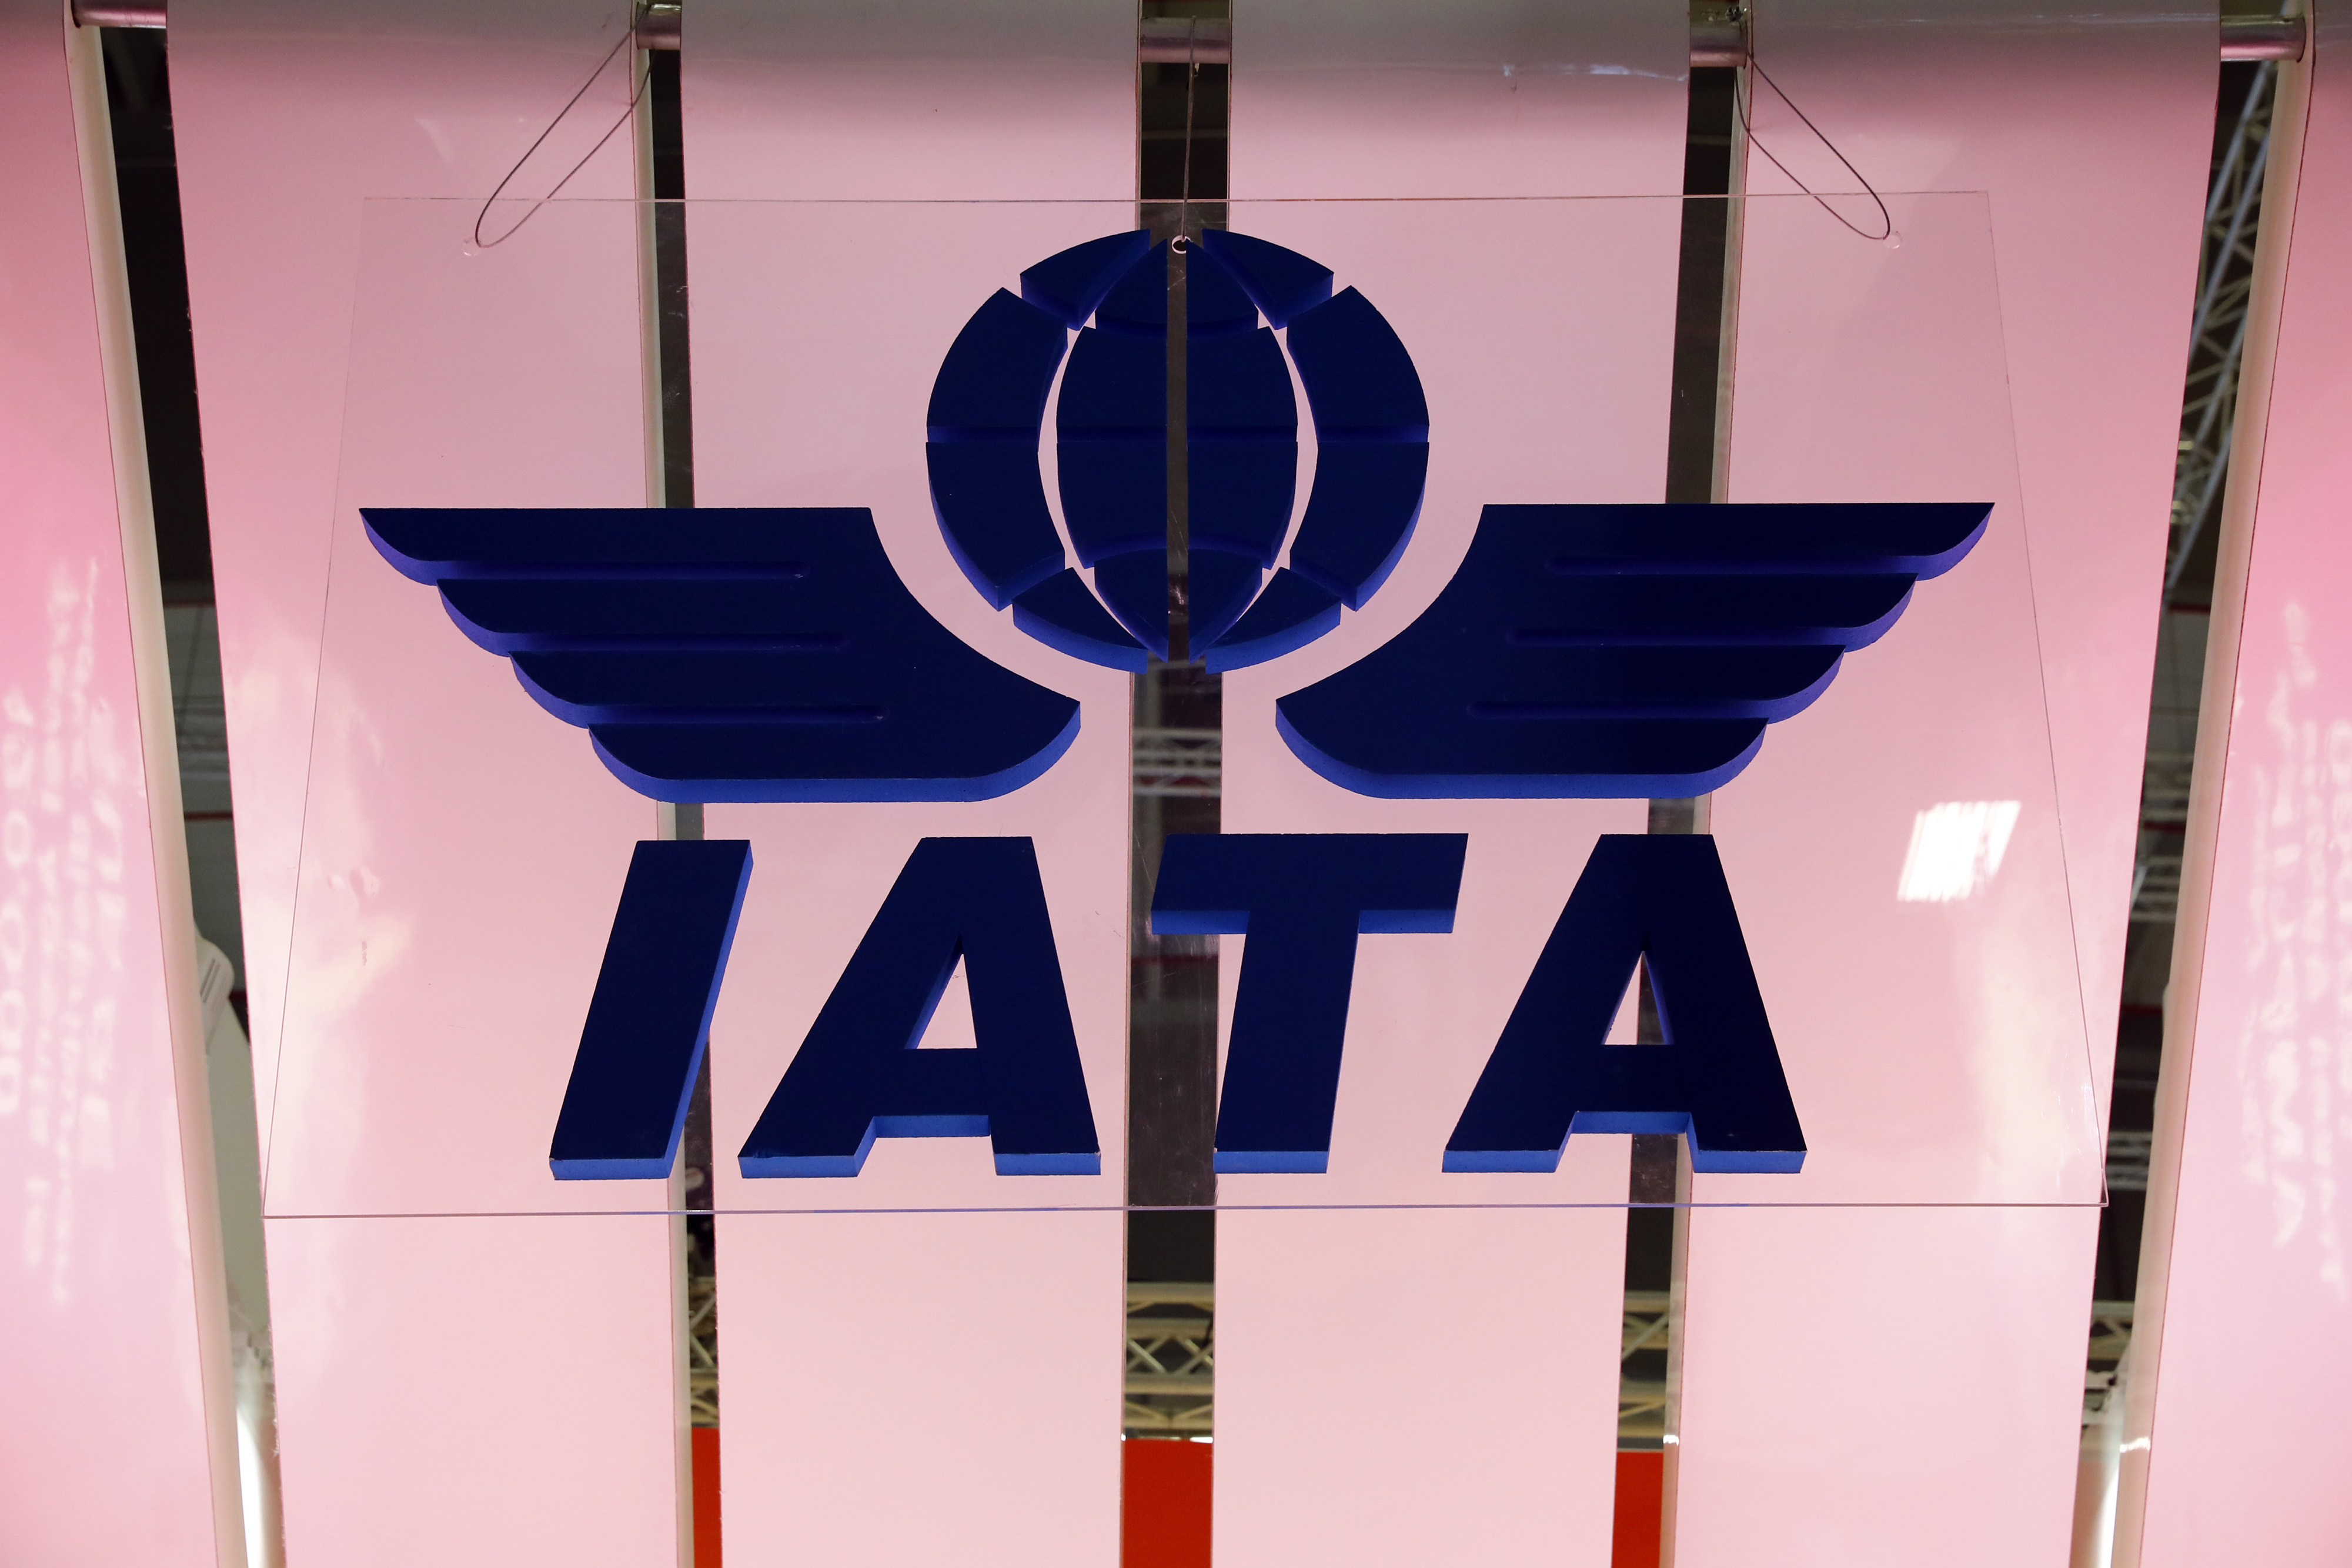 Les compagnies aériennes veulent que le pass sanitaire européen soit une référence mondiale pour voyager (IATA)